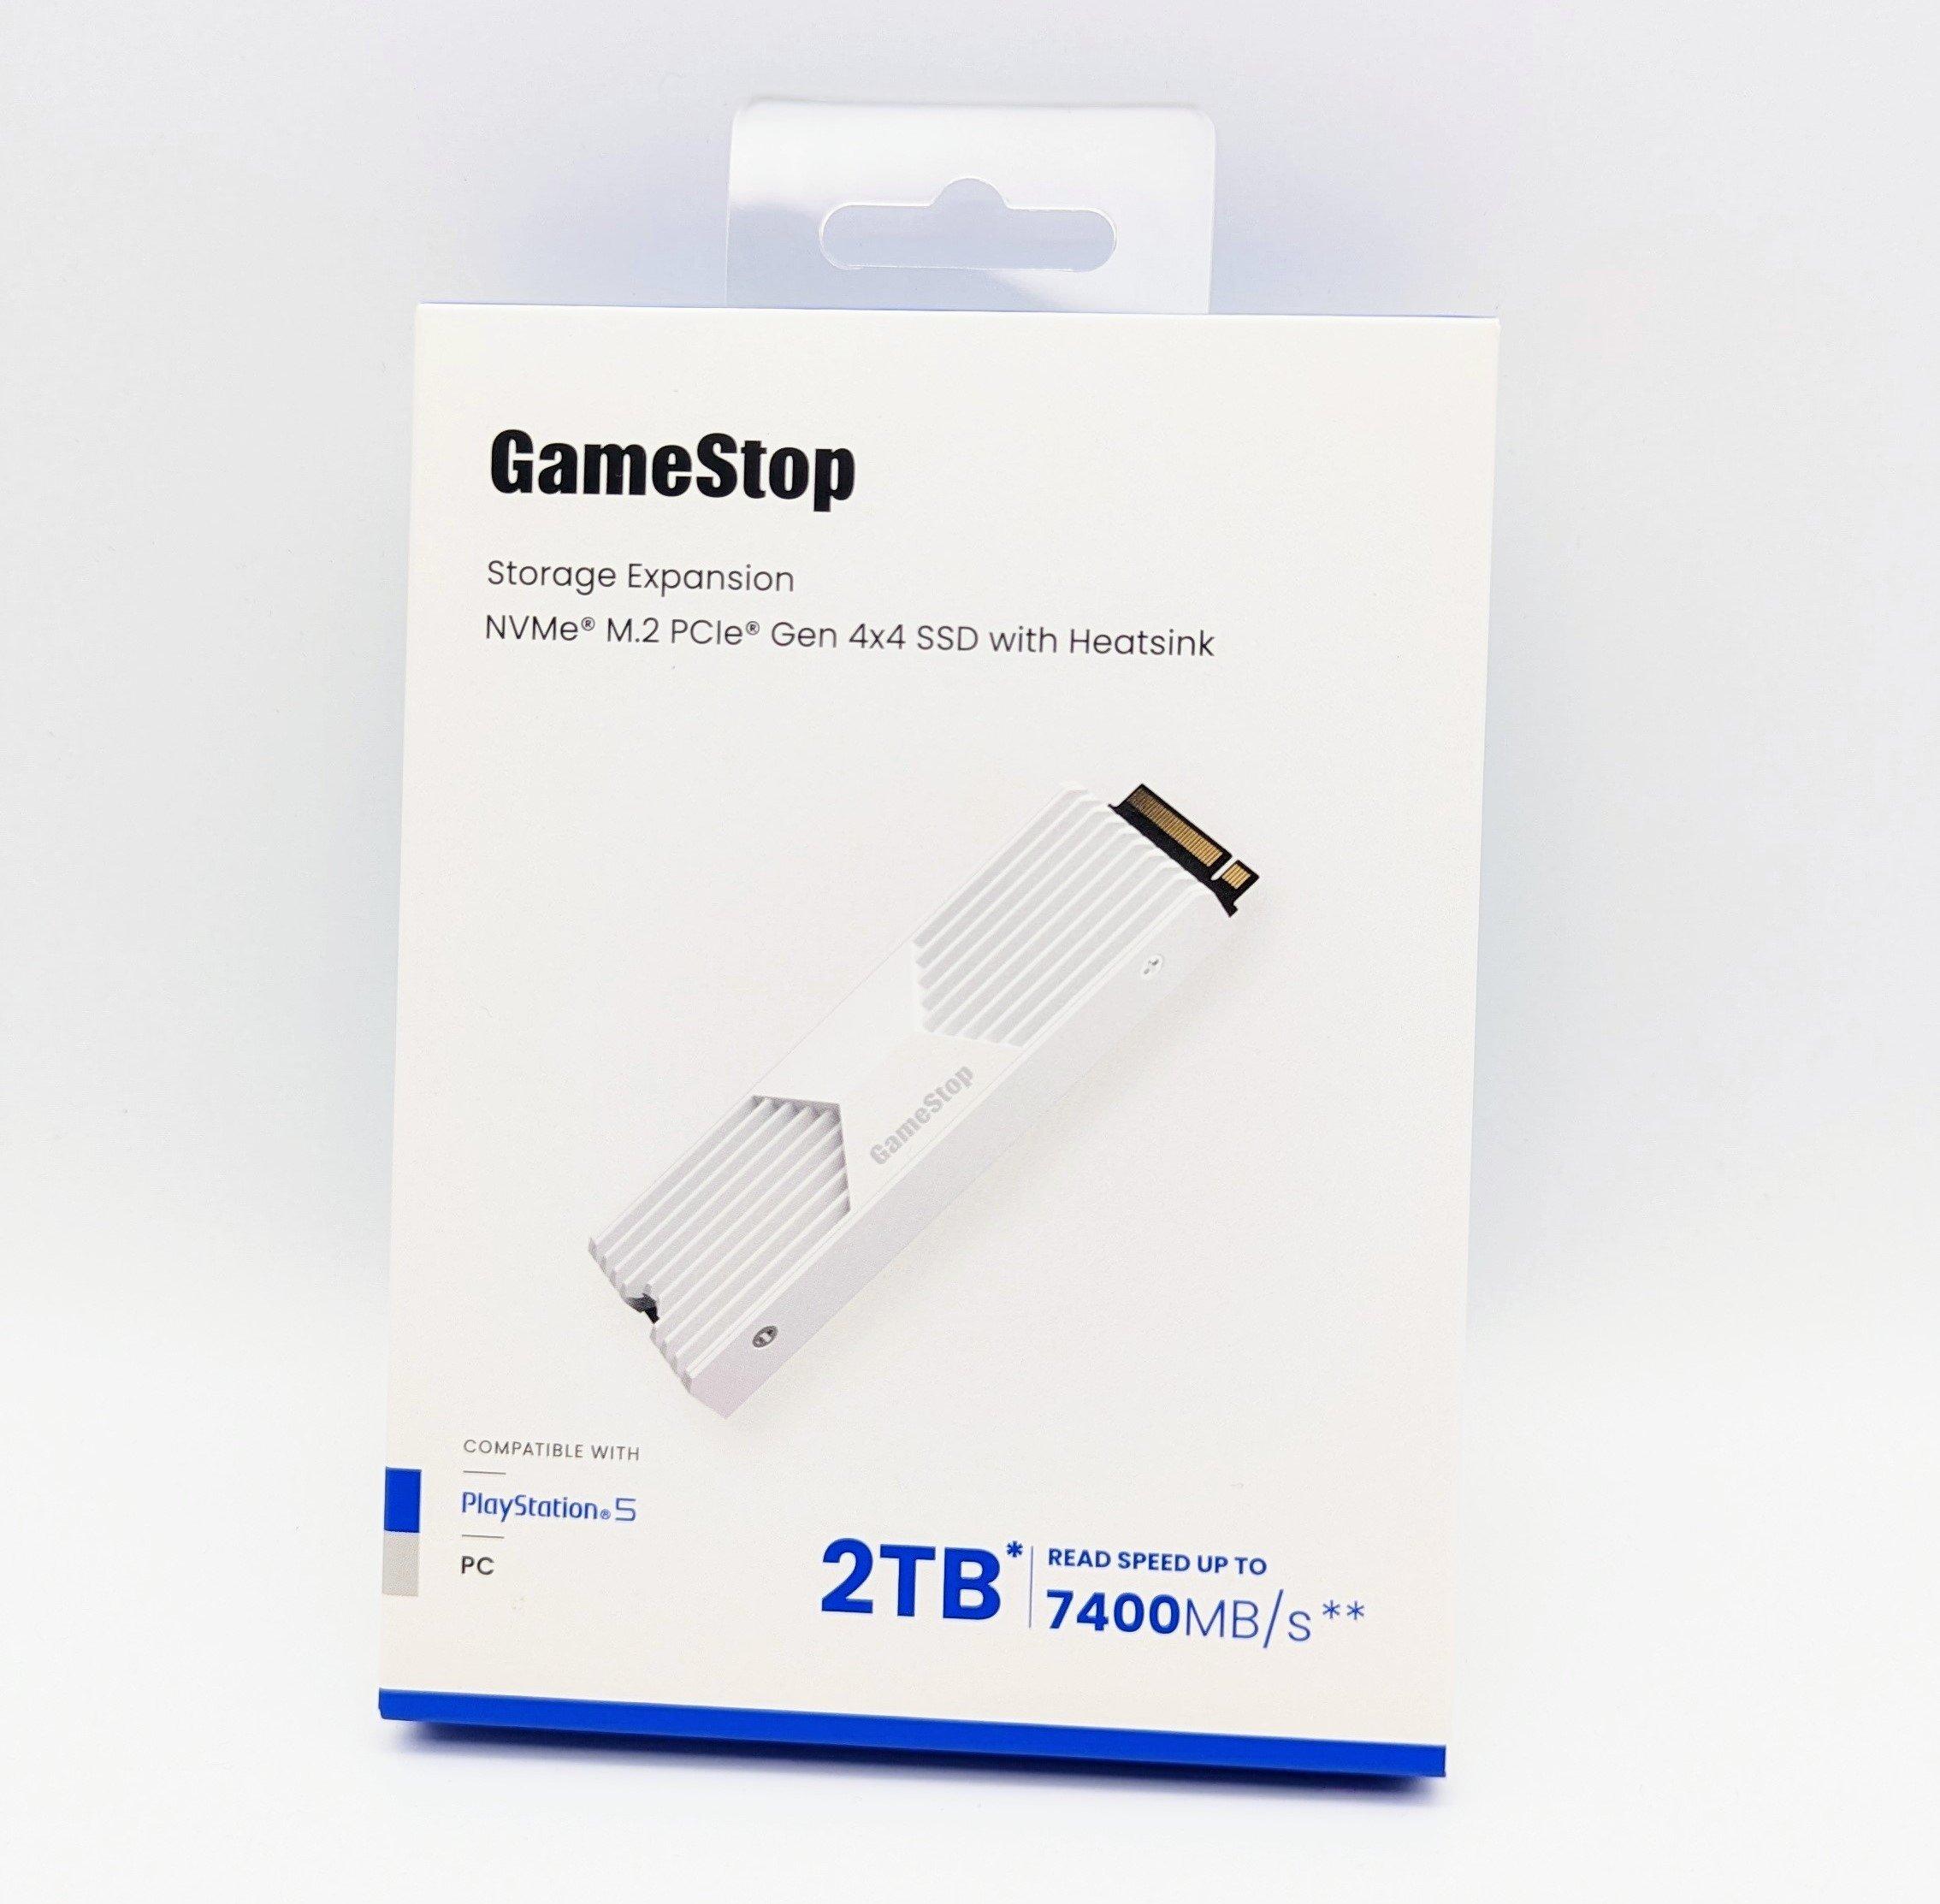 GameStop - Expanding your PS5 storage has never been easier. Get